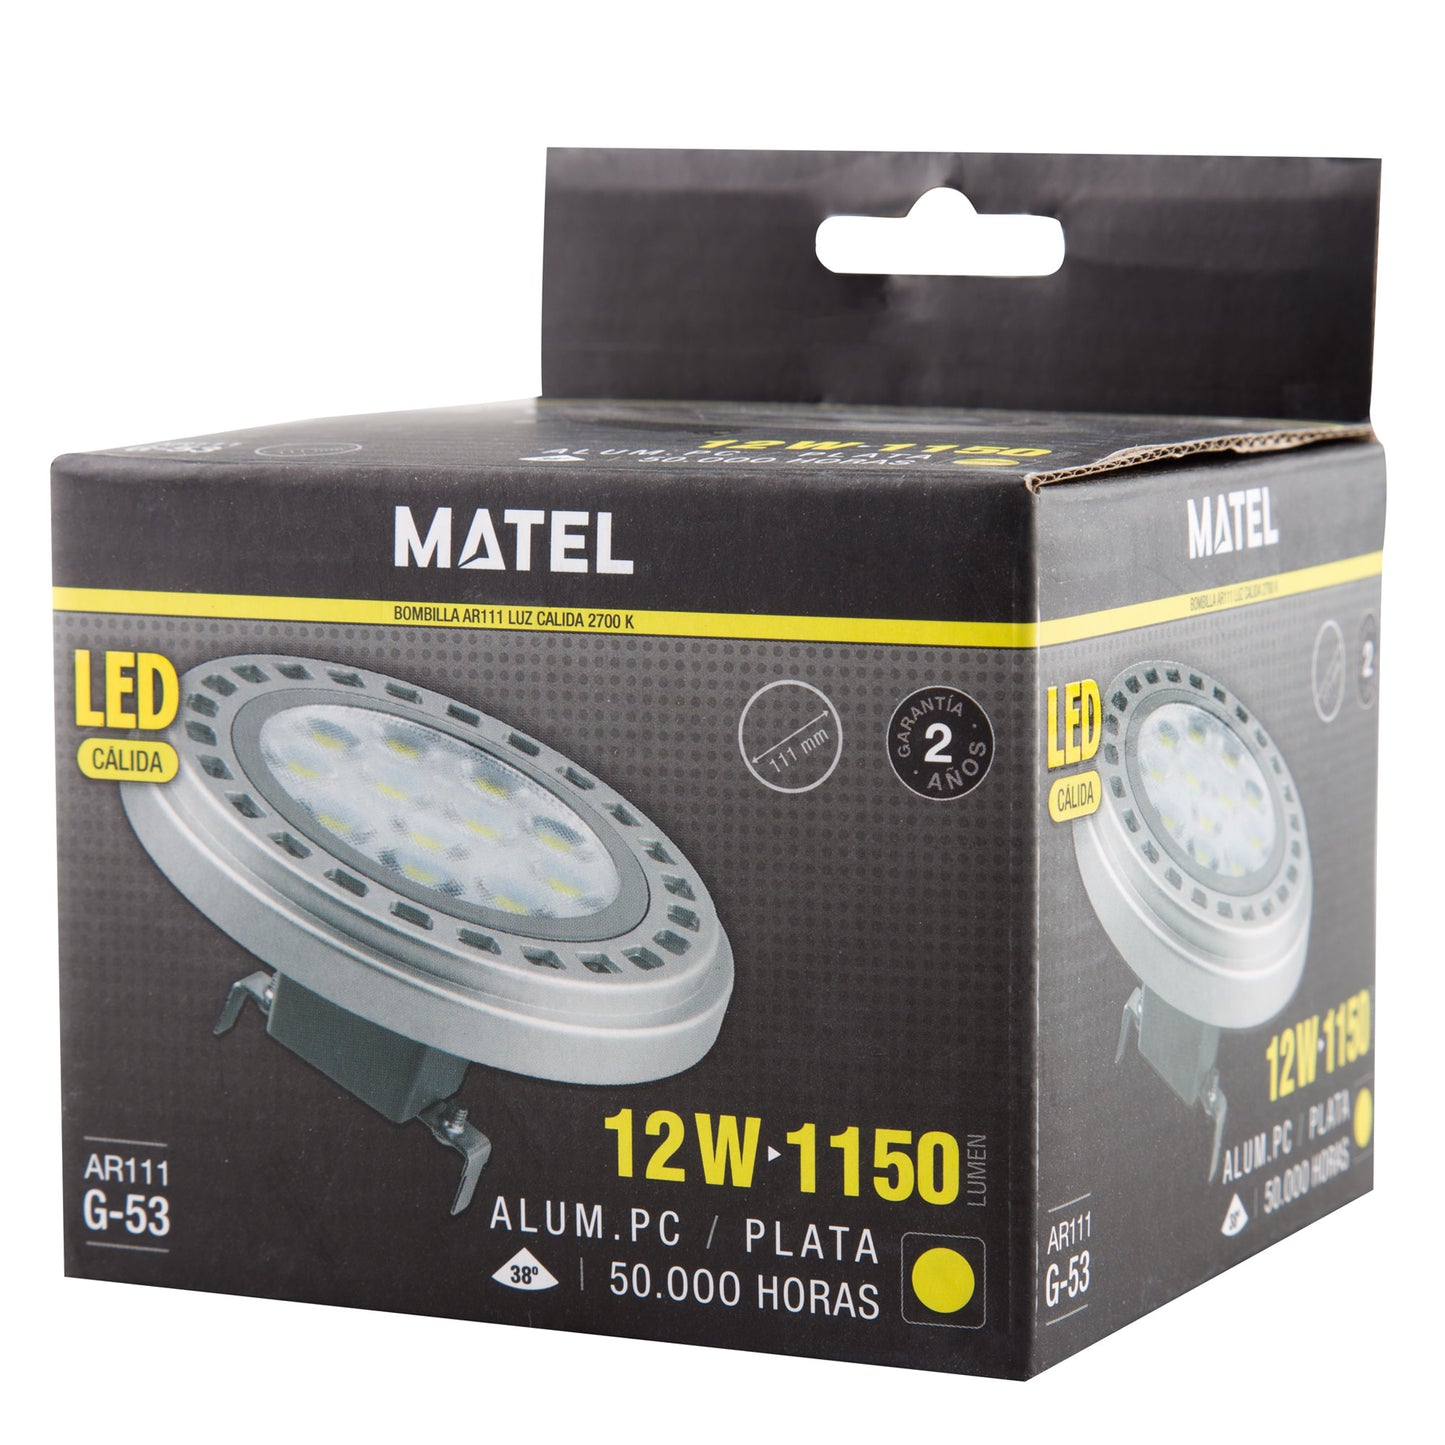 LAMPE LED AR111 38º ES111 GU10 38º 120º GX53 120º 230V AC 